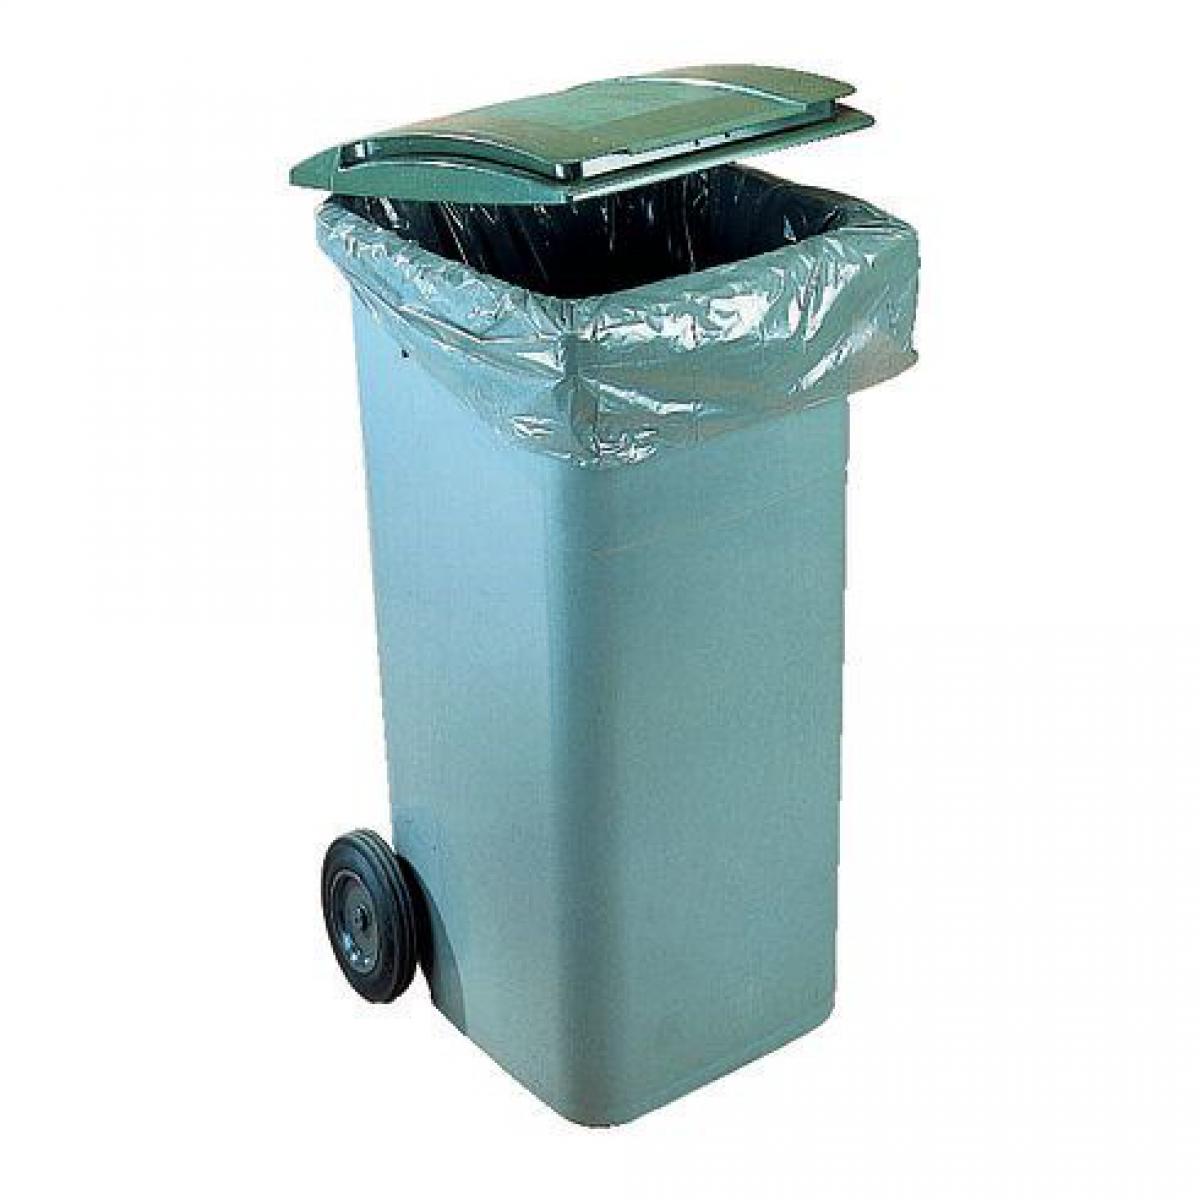 Jm Plast - Sac poubelle 340-360 litres pour conteneurs - paquet de 100 - Entretien intérieur